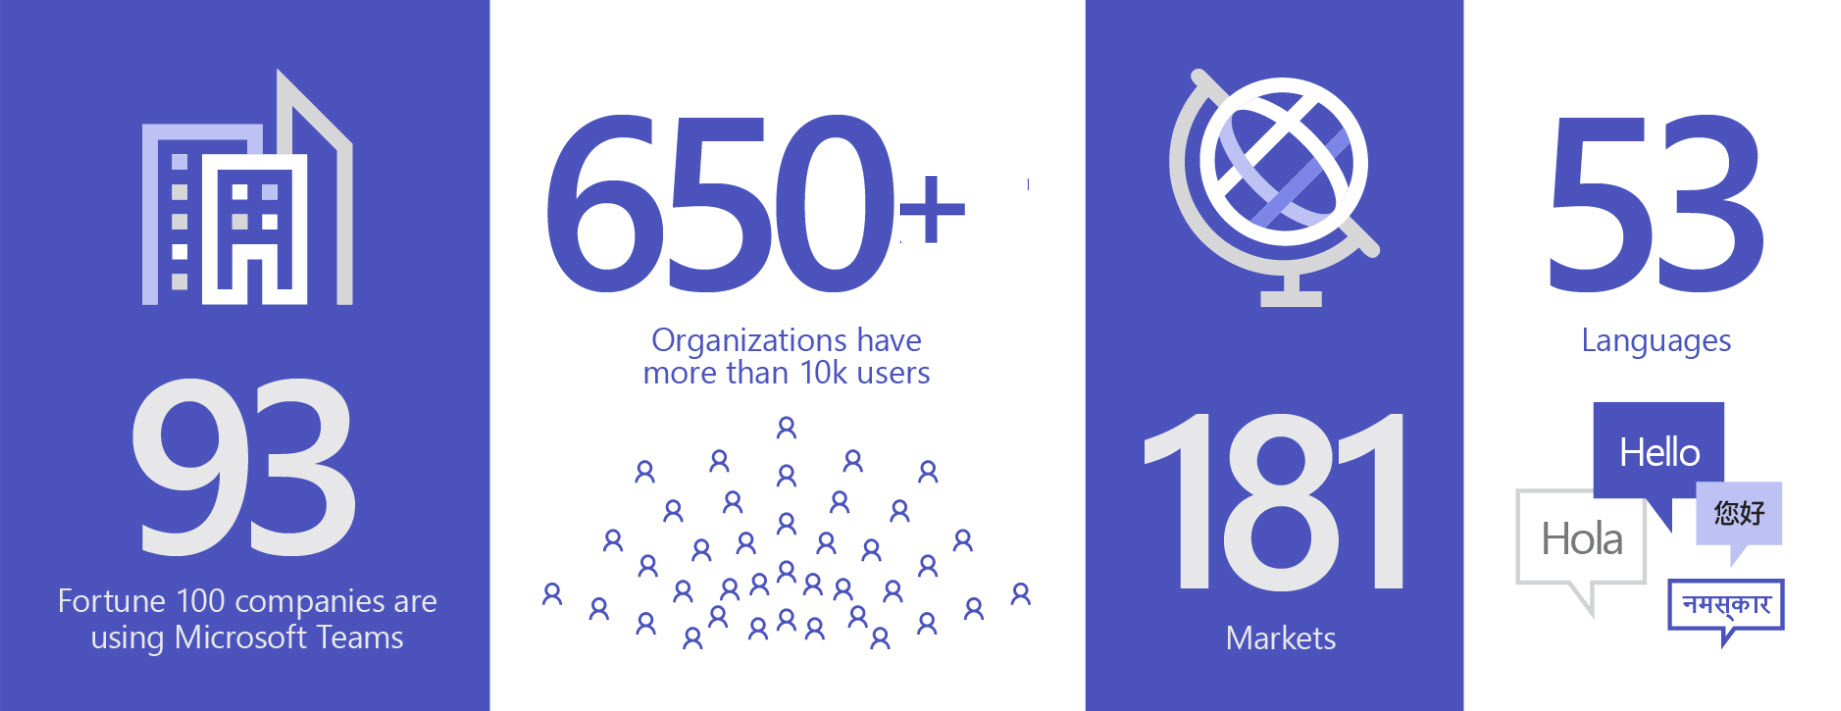 Зображення зі статистикою Teams: службу використовують у 93 організаціях зі списку Fortune 100; понад 650 організацій мають більше 10 000 користувачів Teams; служба доступна на 181 ринку та 53 мовами.